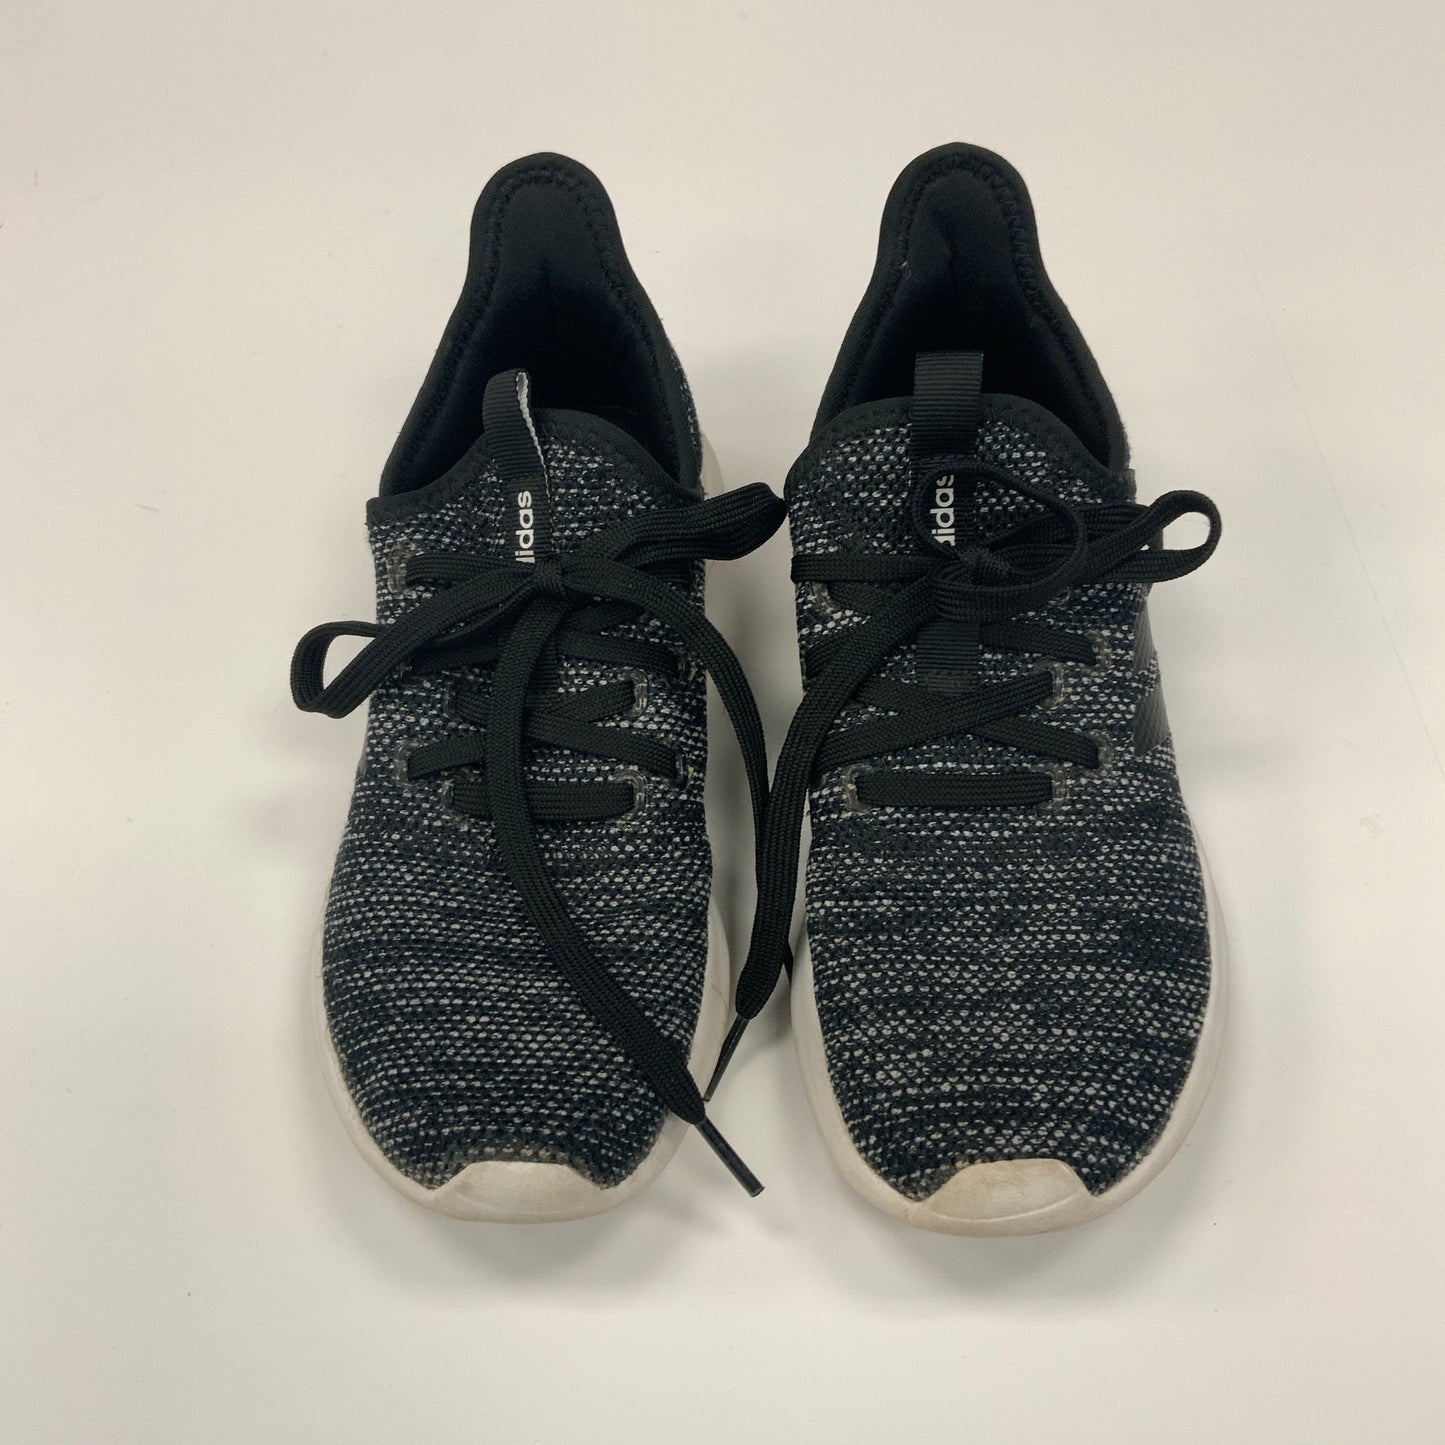 Black Shoes Athletic Adidas, Size 6